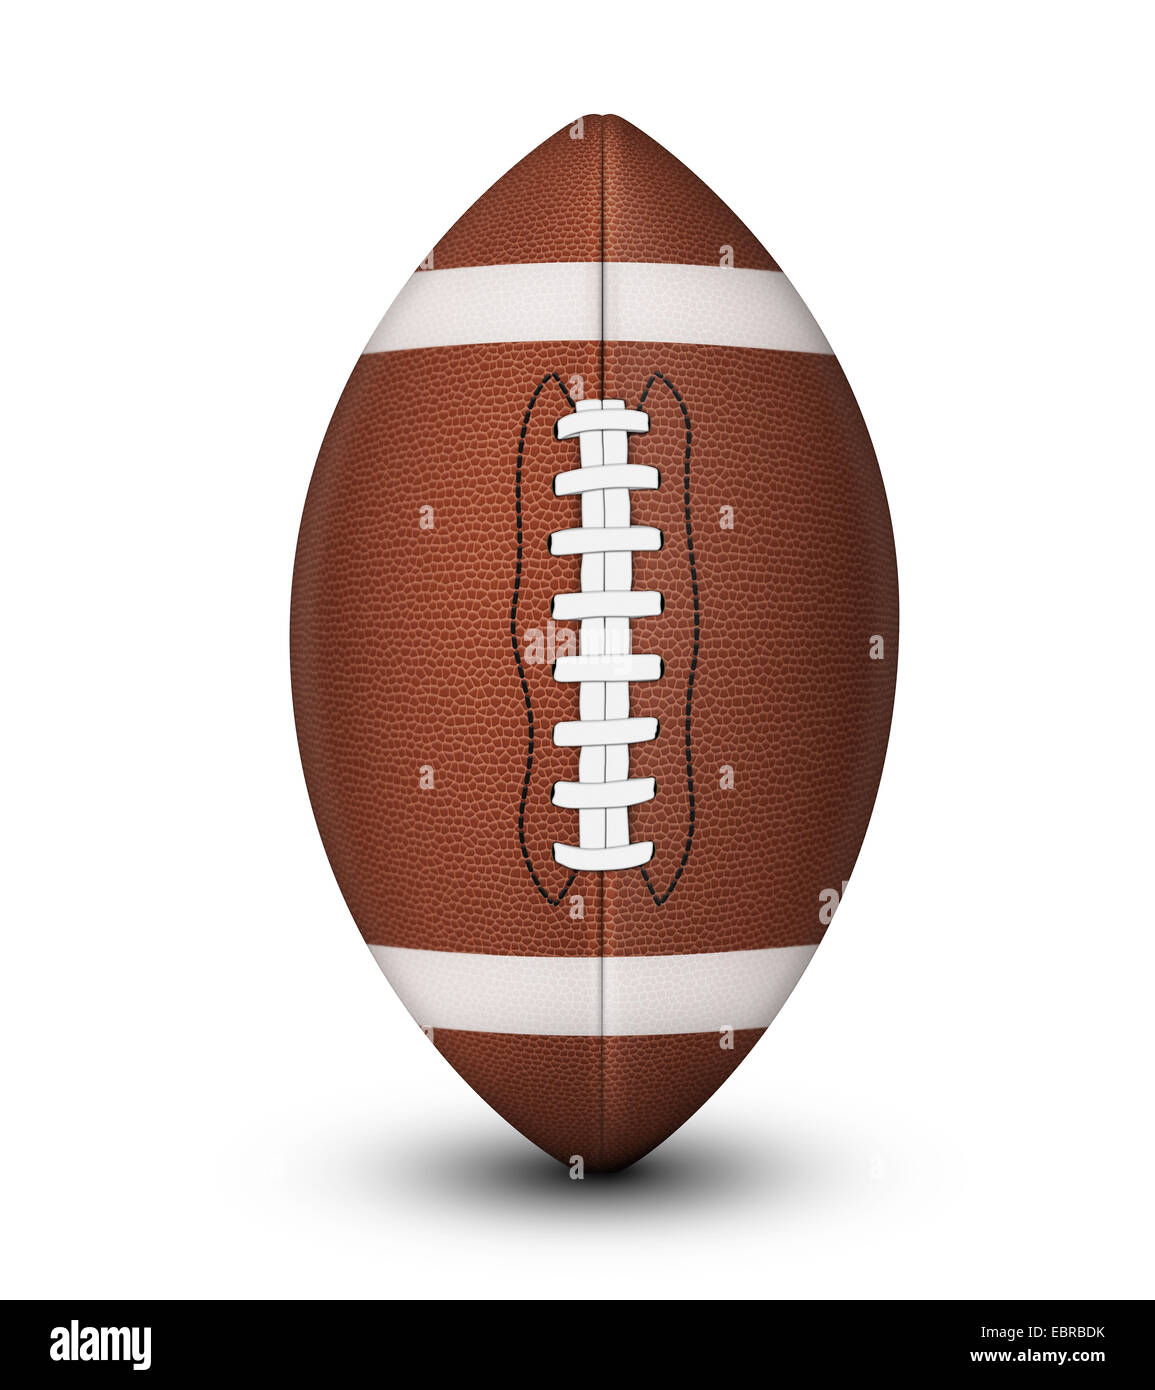 Ballon de football américain traditionnel, avec des dentelles blanches et noires isolé sur un fond blanc avec clipping path et l'ombre. Banque D'Images